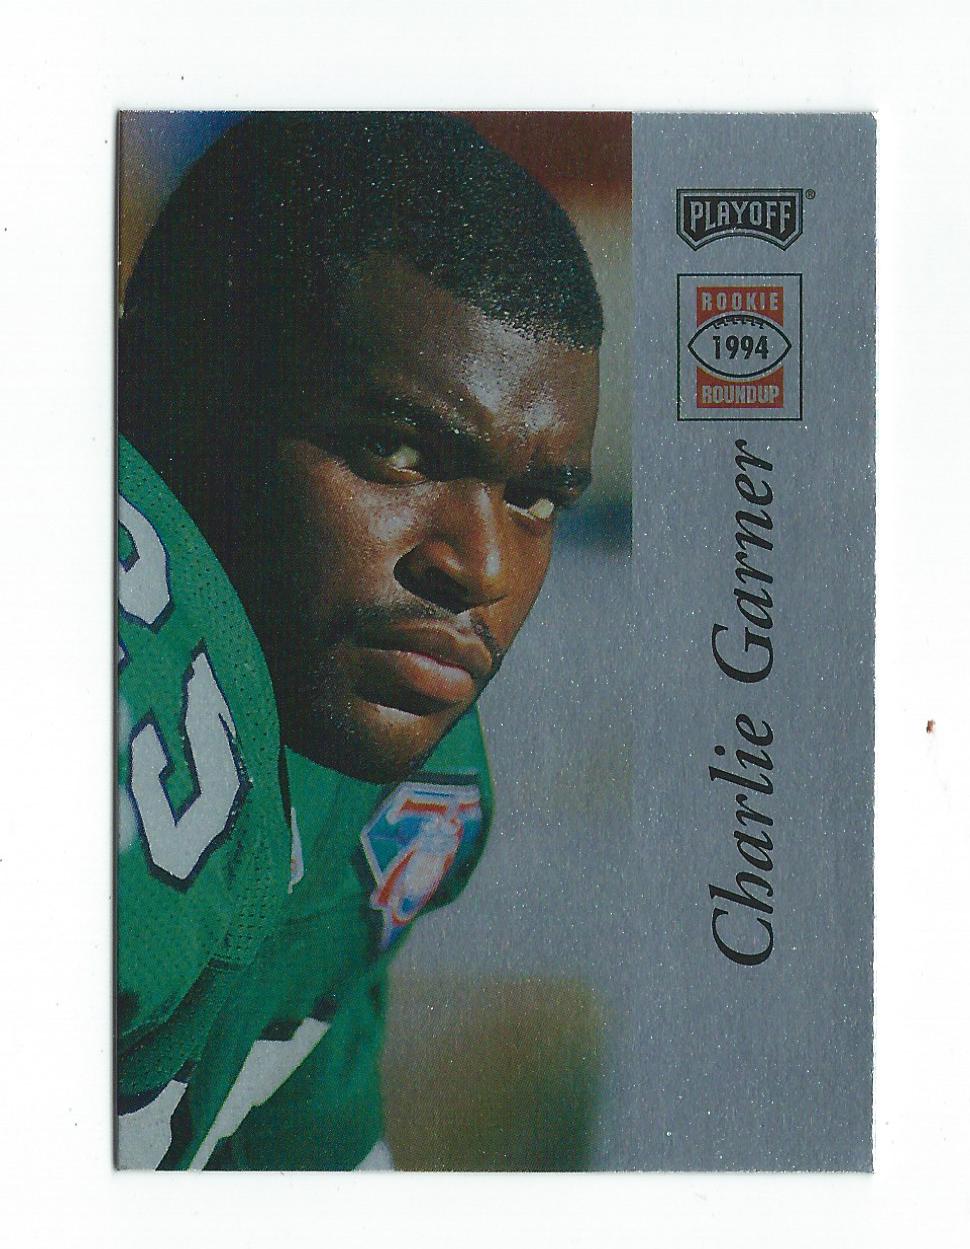 1994 Playoff Rookie Roundup Redemption #5 Charlie Garner